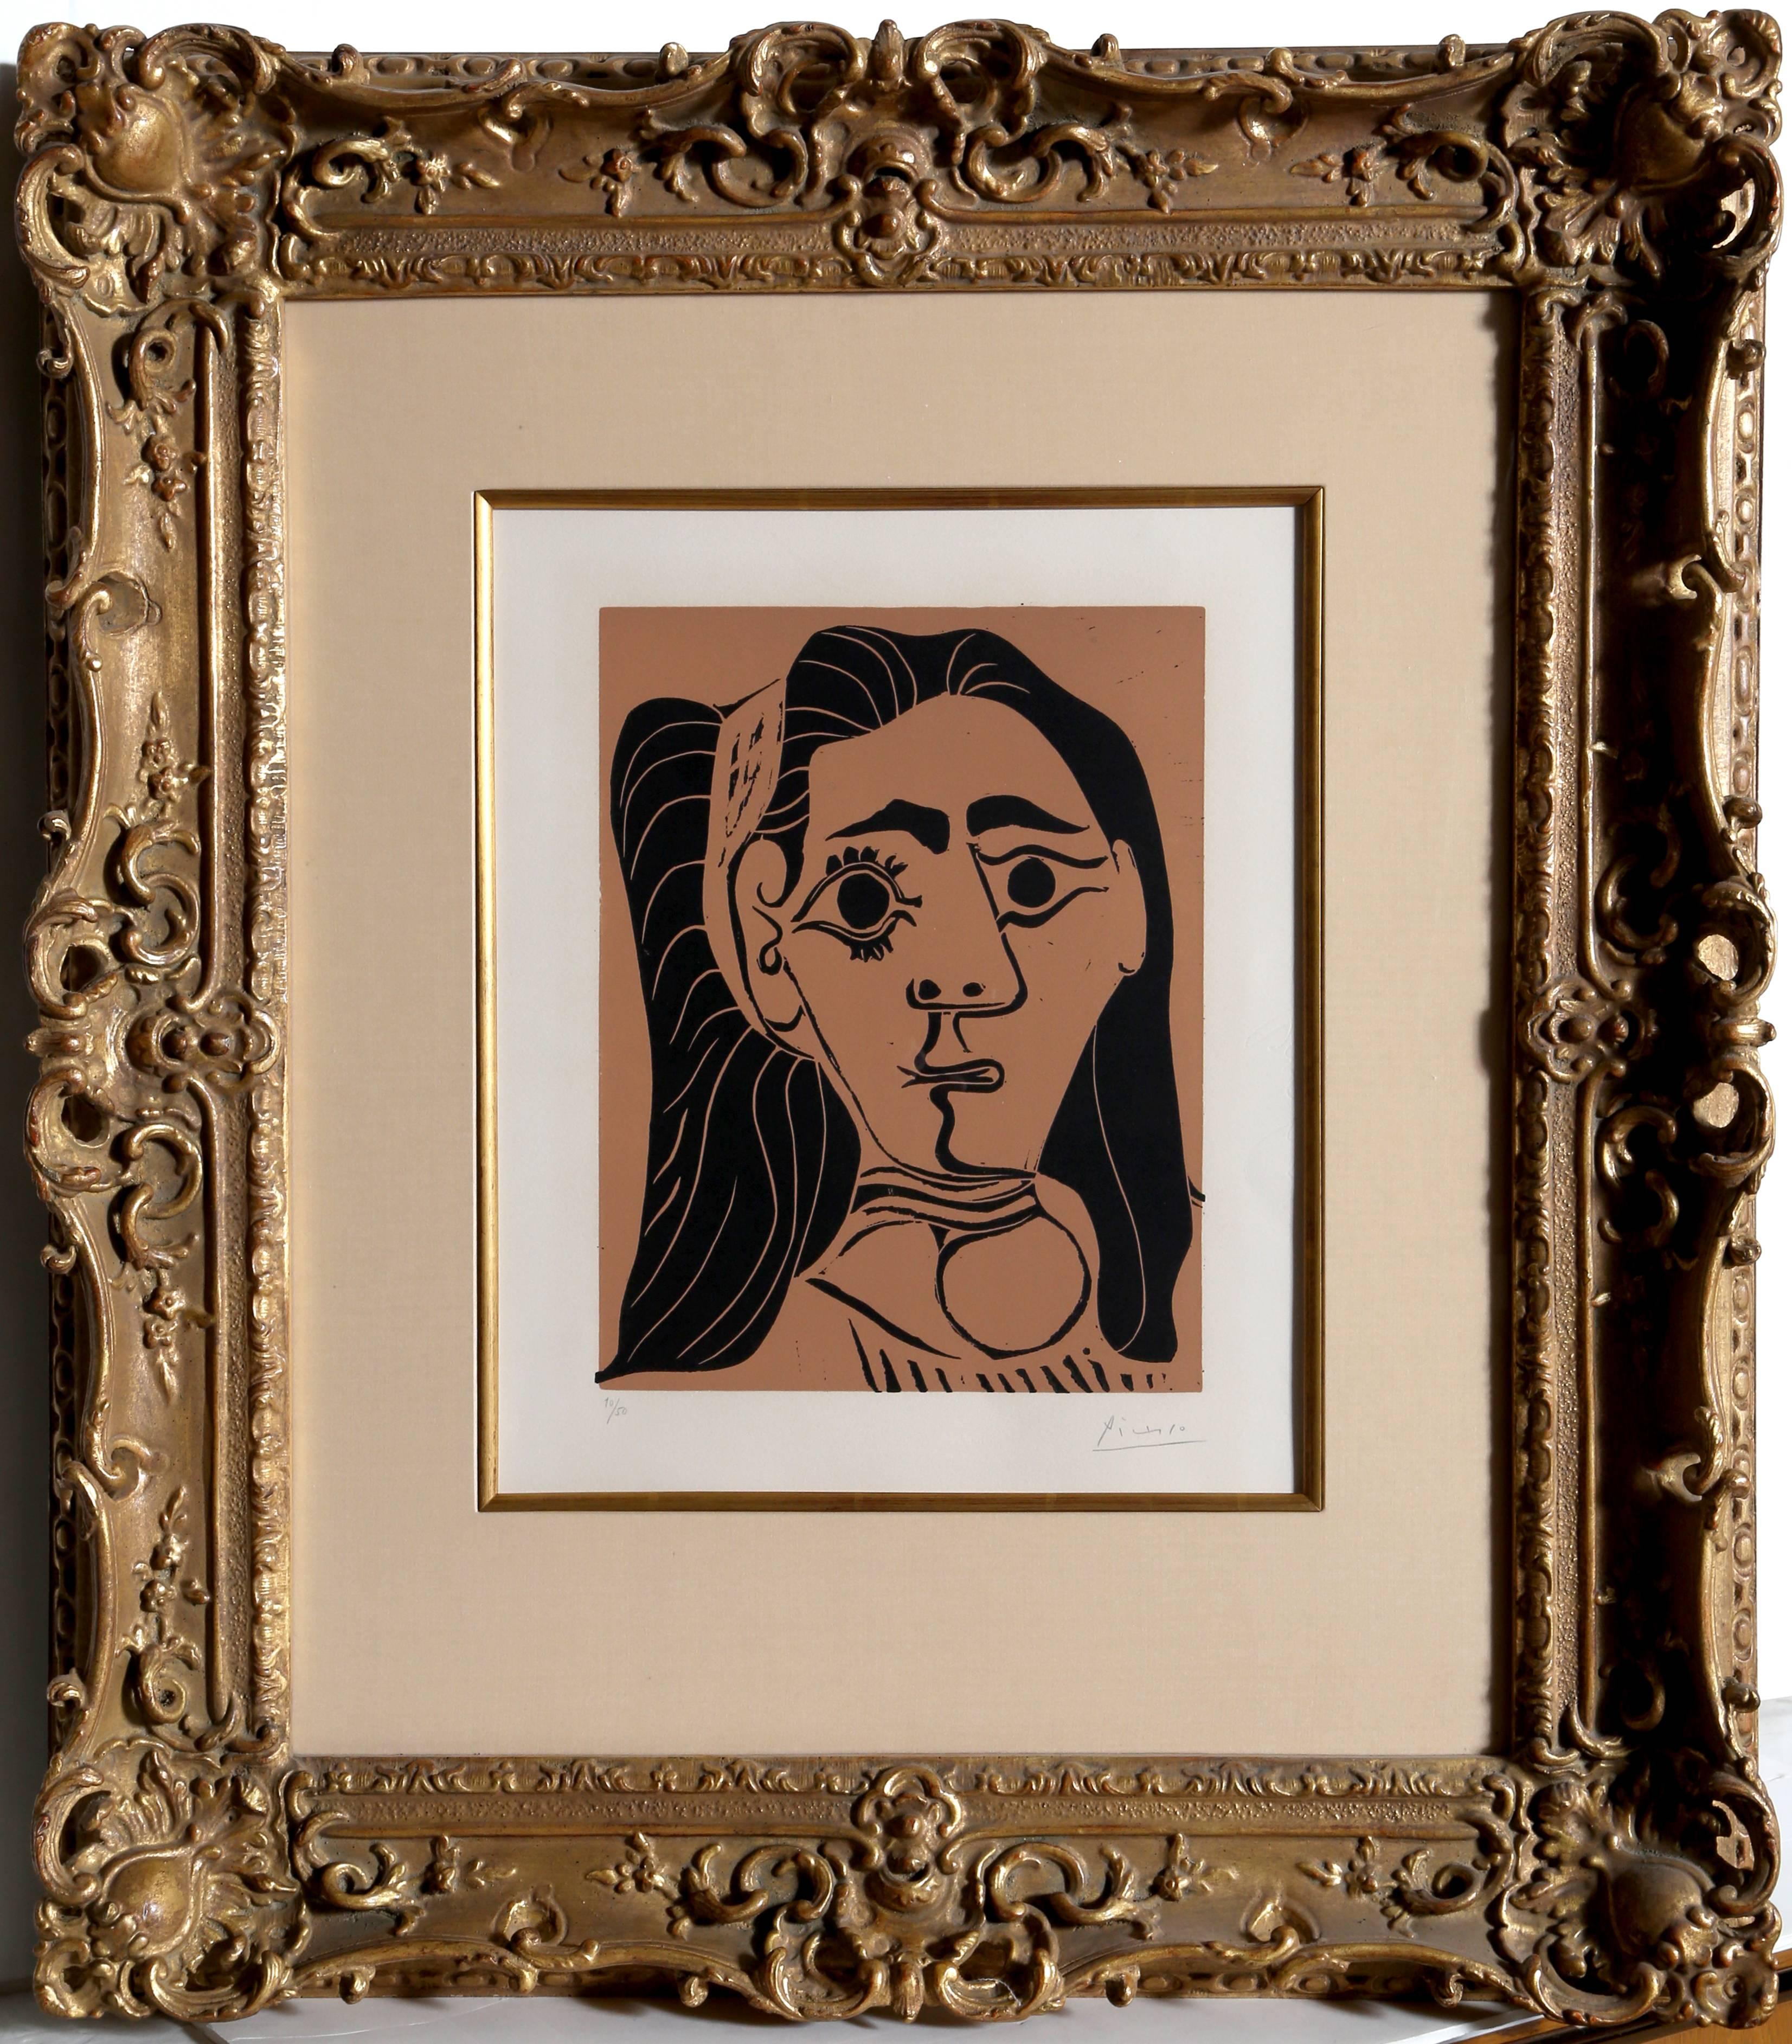 Jacqueline au Bandeau, Signed Linocut 1962 by Pablo Picasso 1